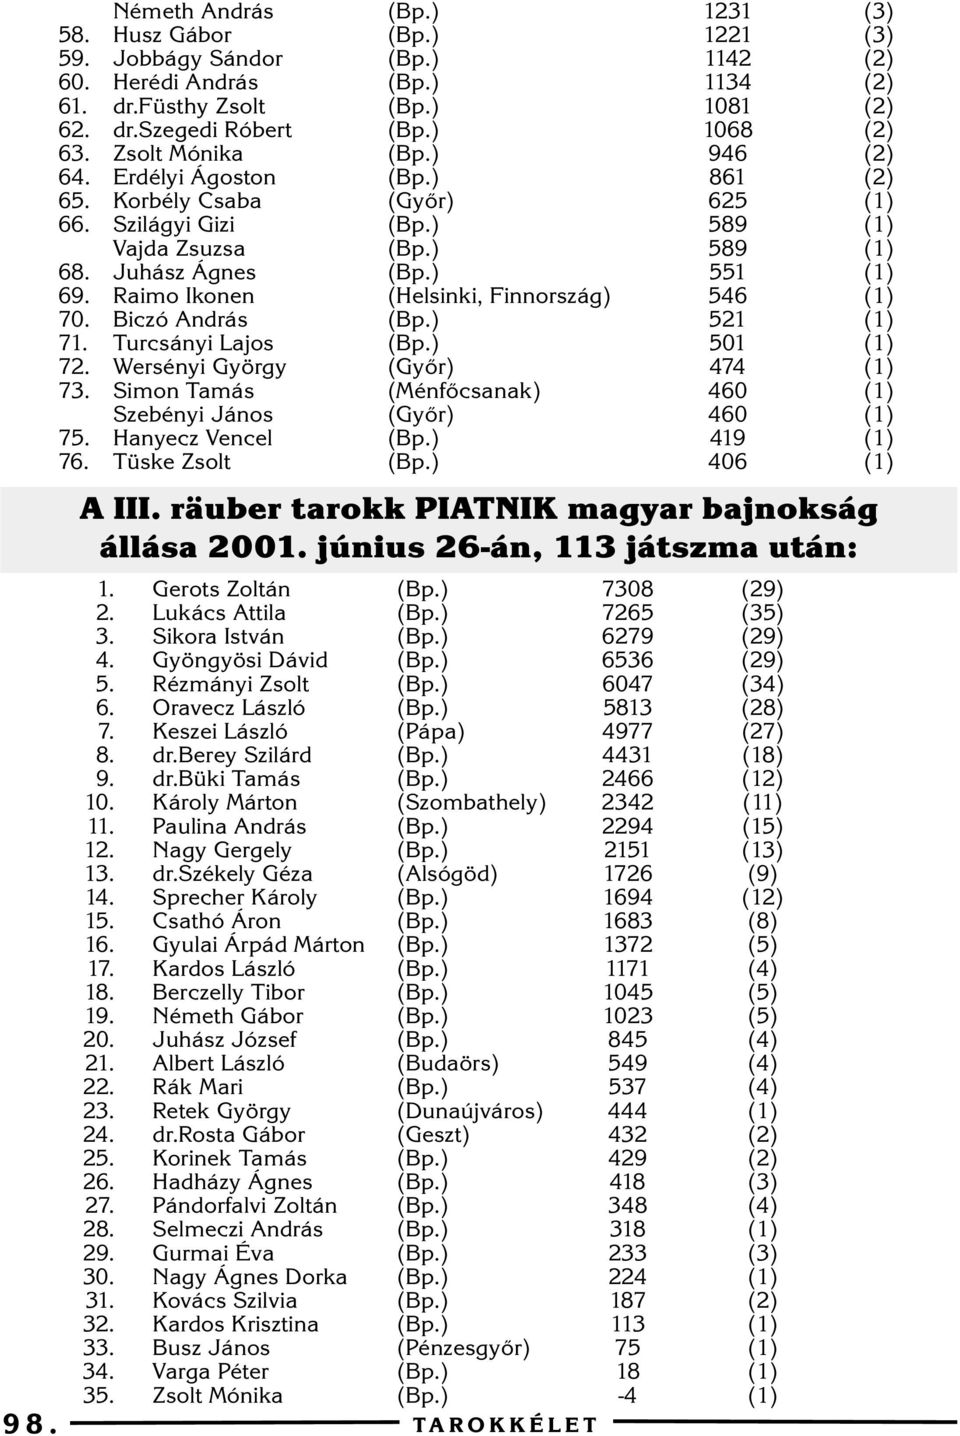 Tüske Zsolt (Gyõr) (Helsinki, Finnország) (Gyõr) (Ménfõcsanak) (Gyõr) A III. räuber tarokk PIATNIK magyar bajnokság állása 200. június 26-án, 3 játszma után:. 2. 3. 4. 5. 6. 7. 8. 9. 0.. 2. 3. 4. 5. 6. 7. 8. 9. 20. 2. 22.